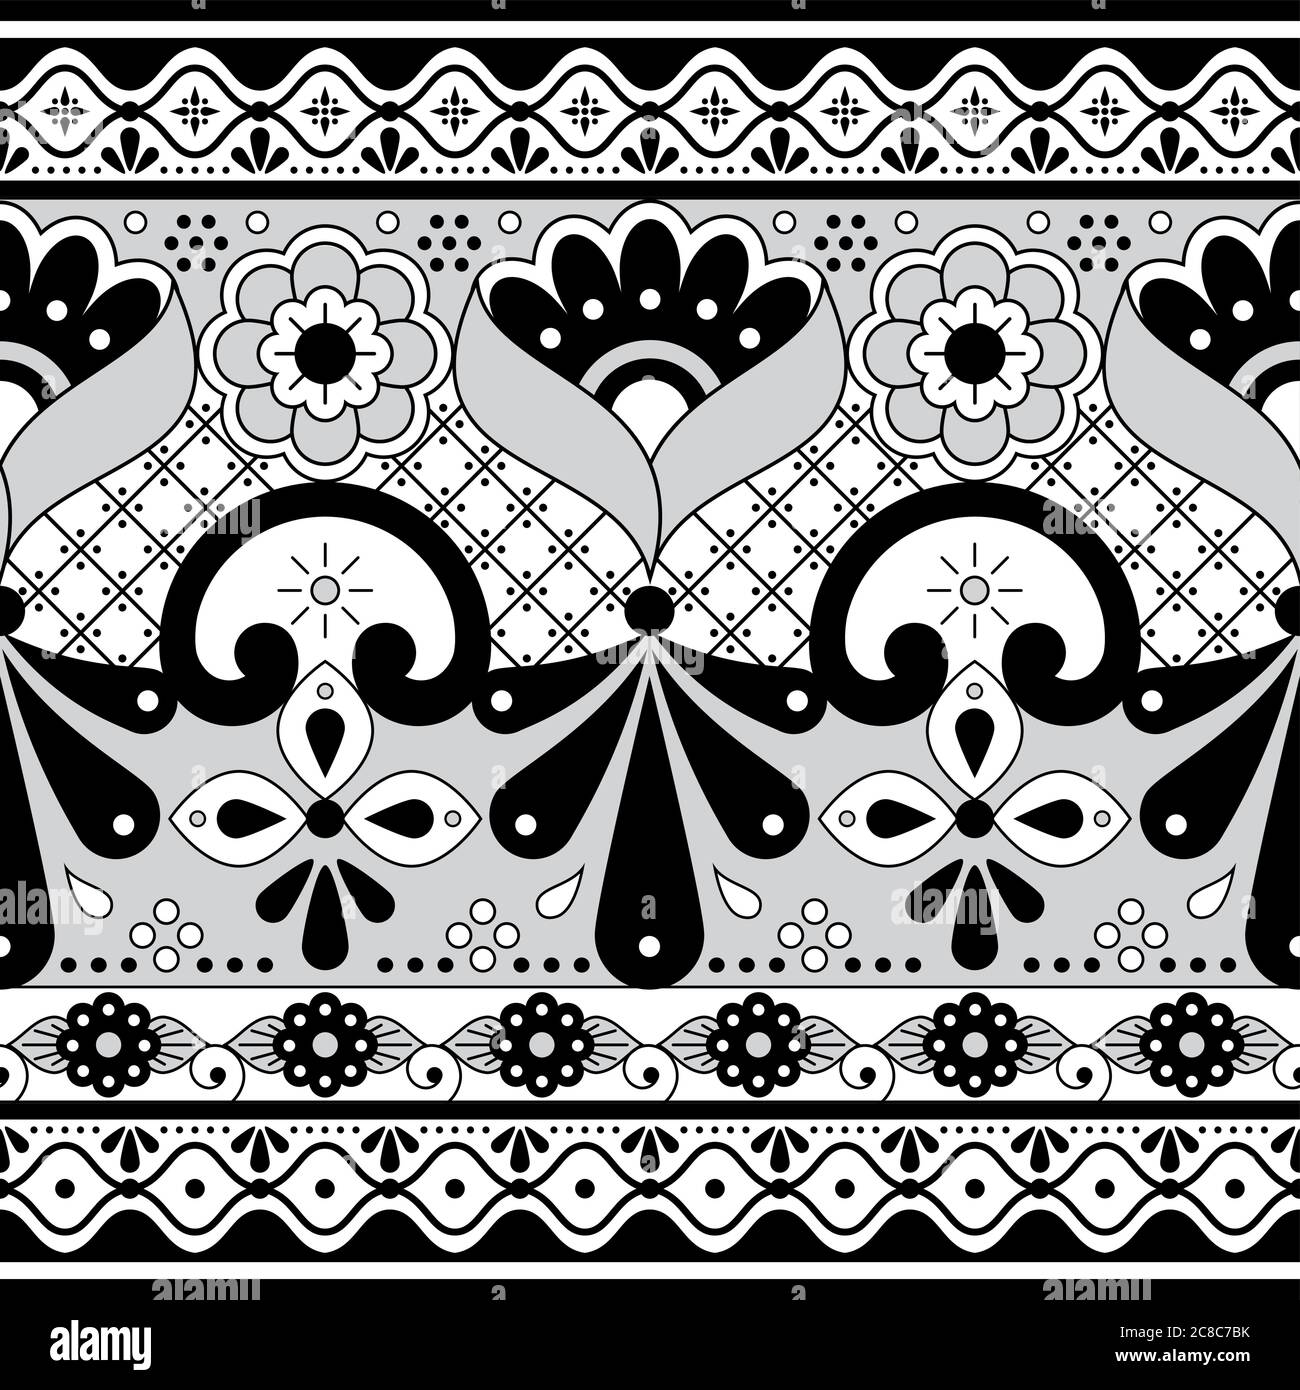 Cerámica mexicana Talavera Poblana vector patrón sin costuras, negro repetitivo y adorno de látiga inspirado en el diseño tradicional de cerámica de México Ilustración del Vector